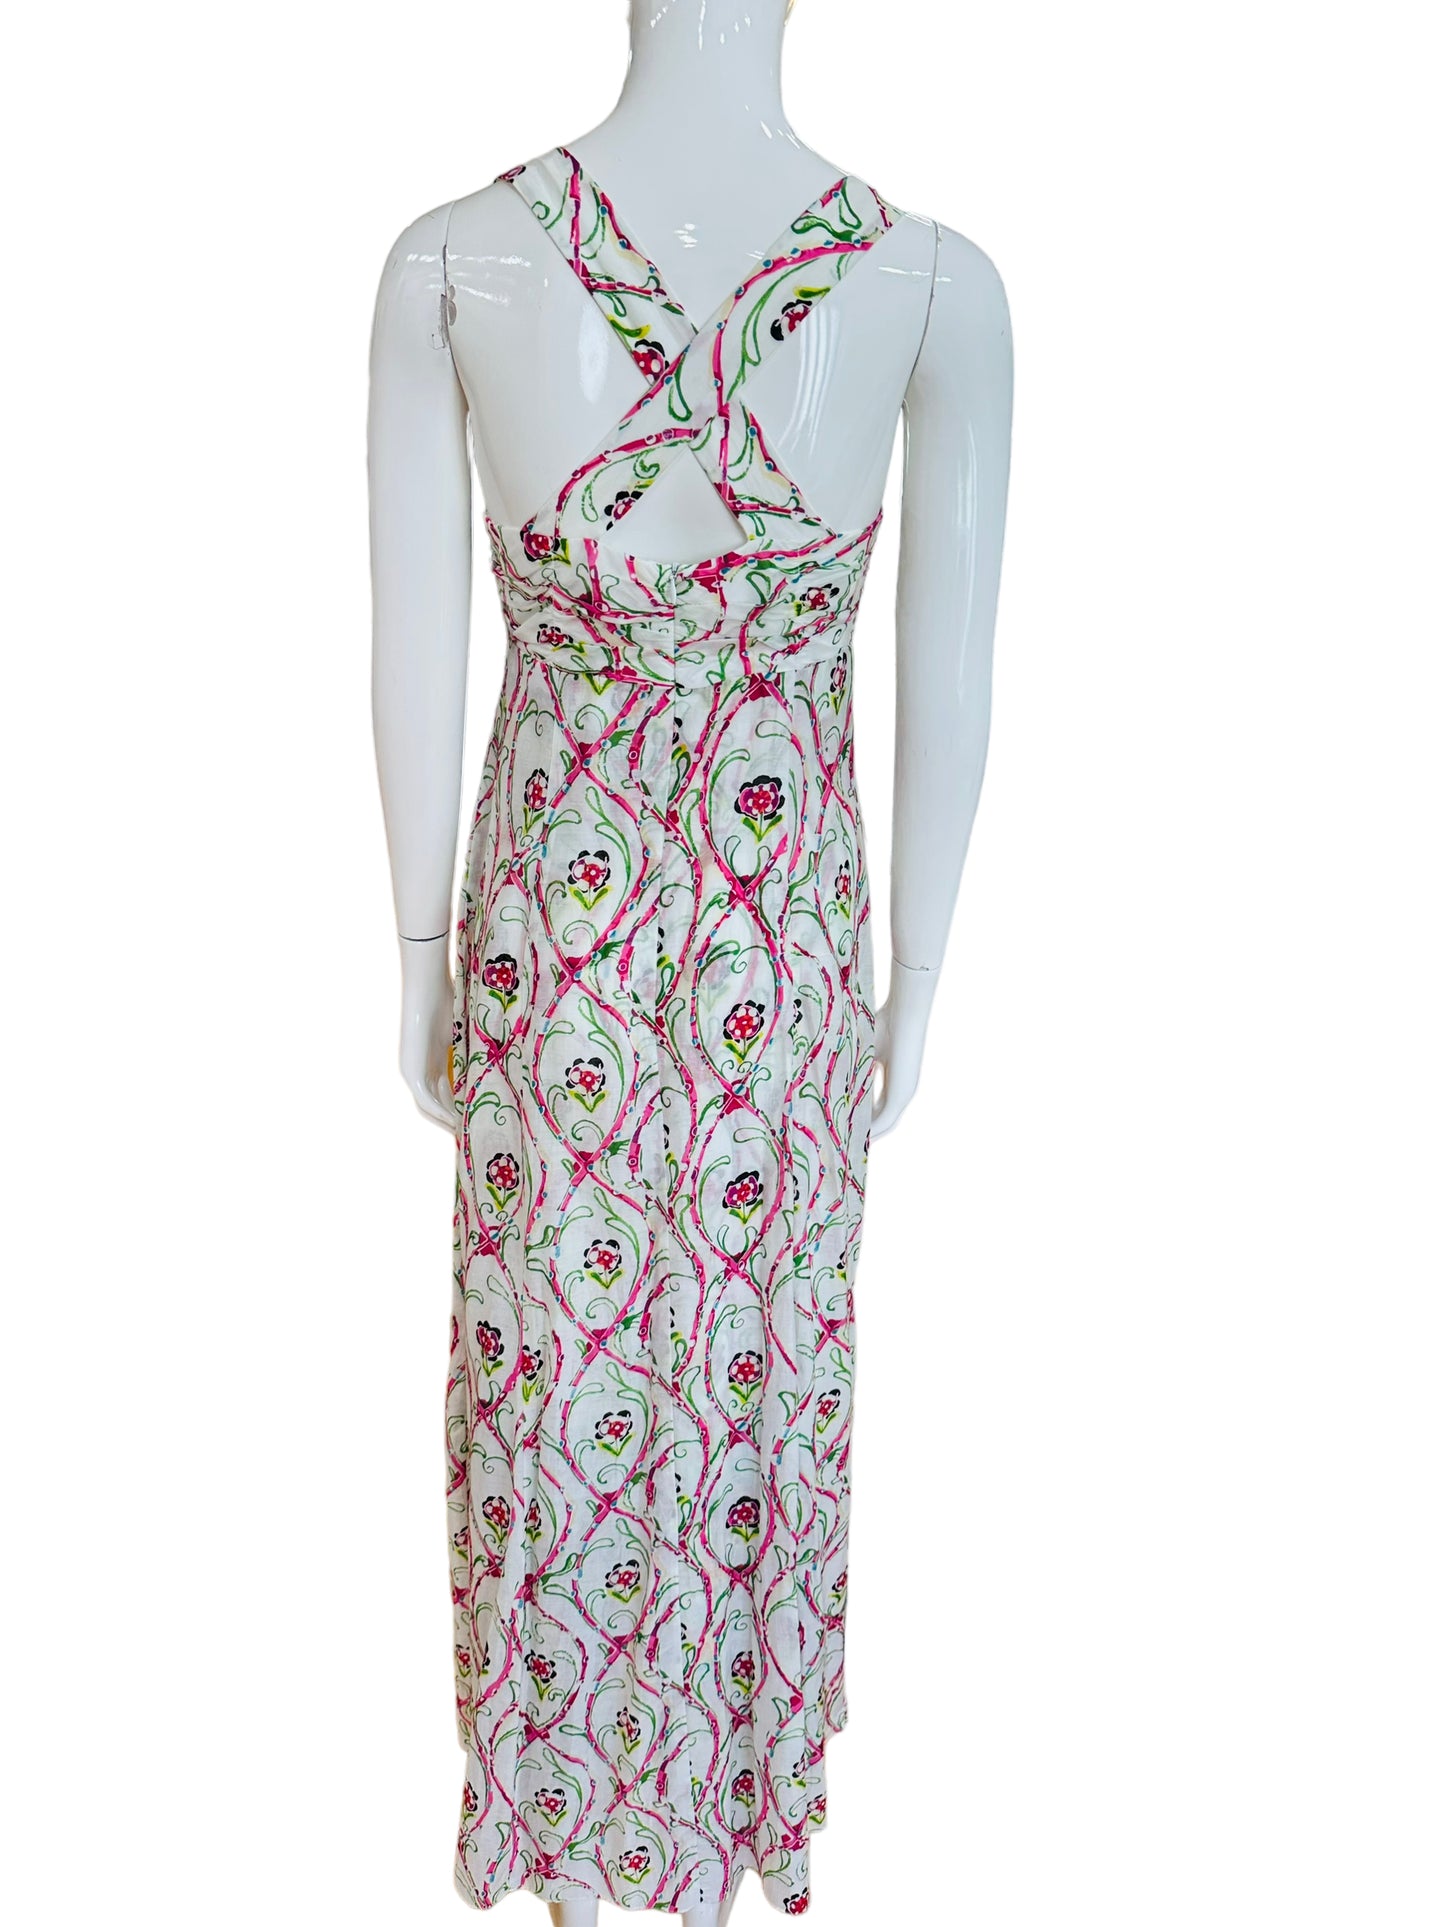 Nanette Lepore floral maxi dress Daphne 4